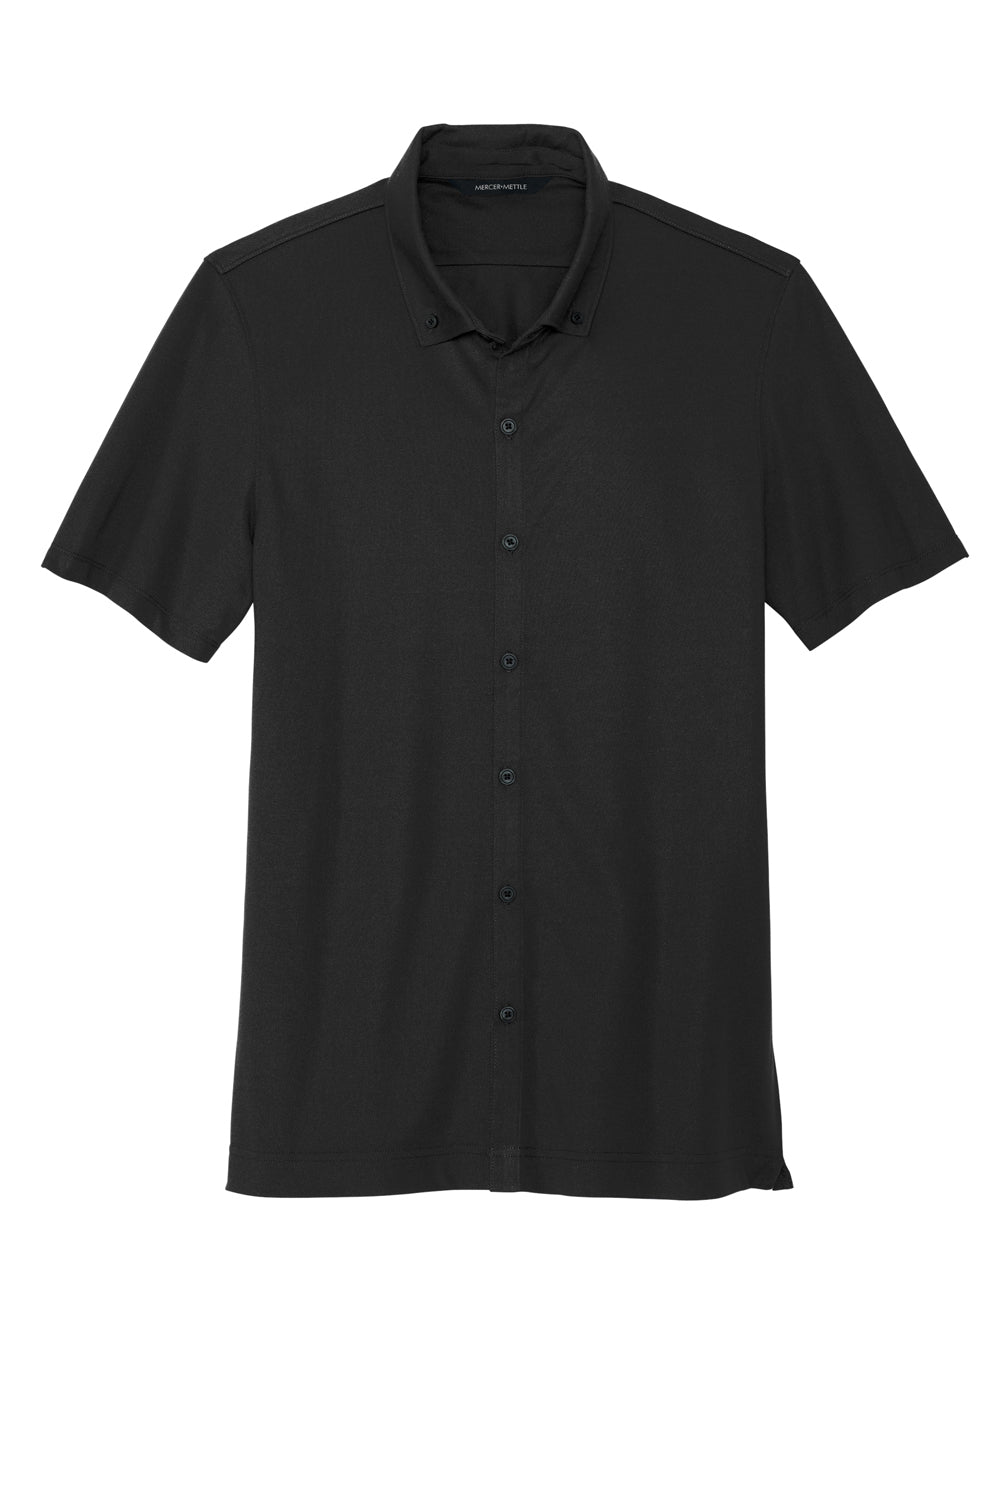 Mercer+Mettle MM1006 Stretch Pique Short Sleeve Button Down Shirt Deep Black Flat Front